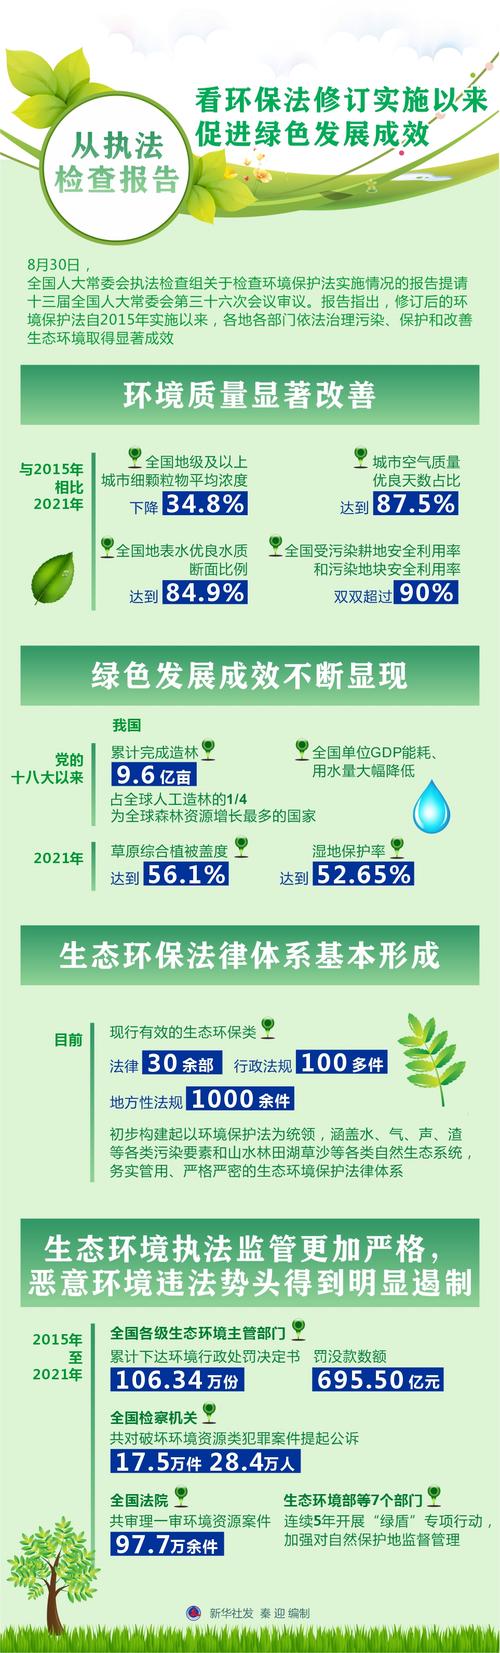 新华社图表,北京,2022年8月30日(图表)从执法检查报告看环保法修订